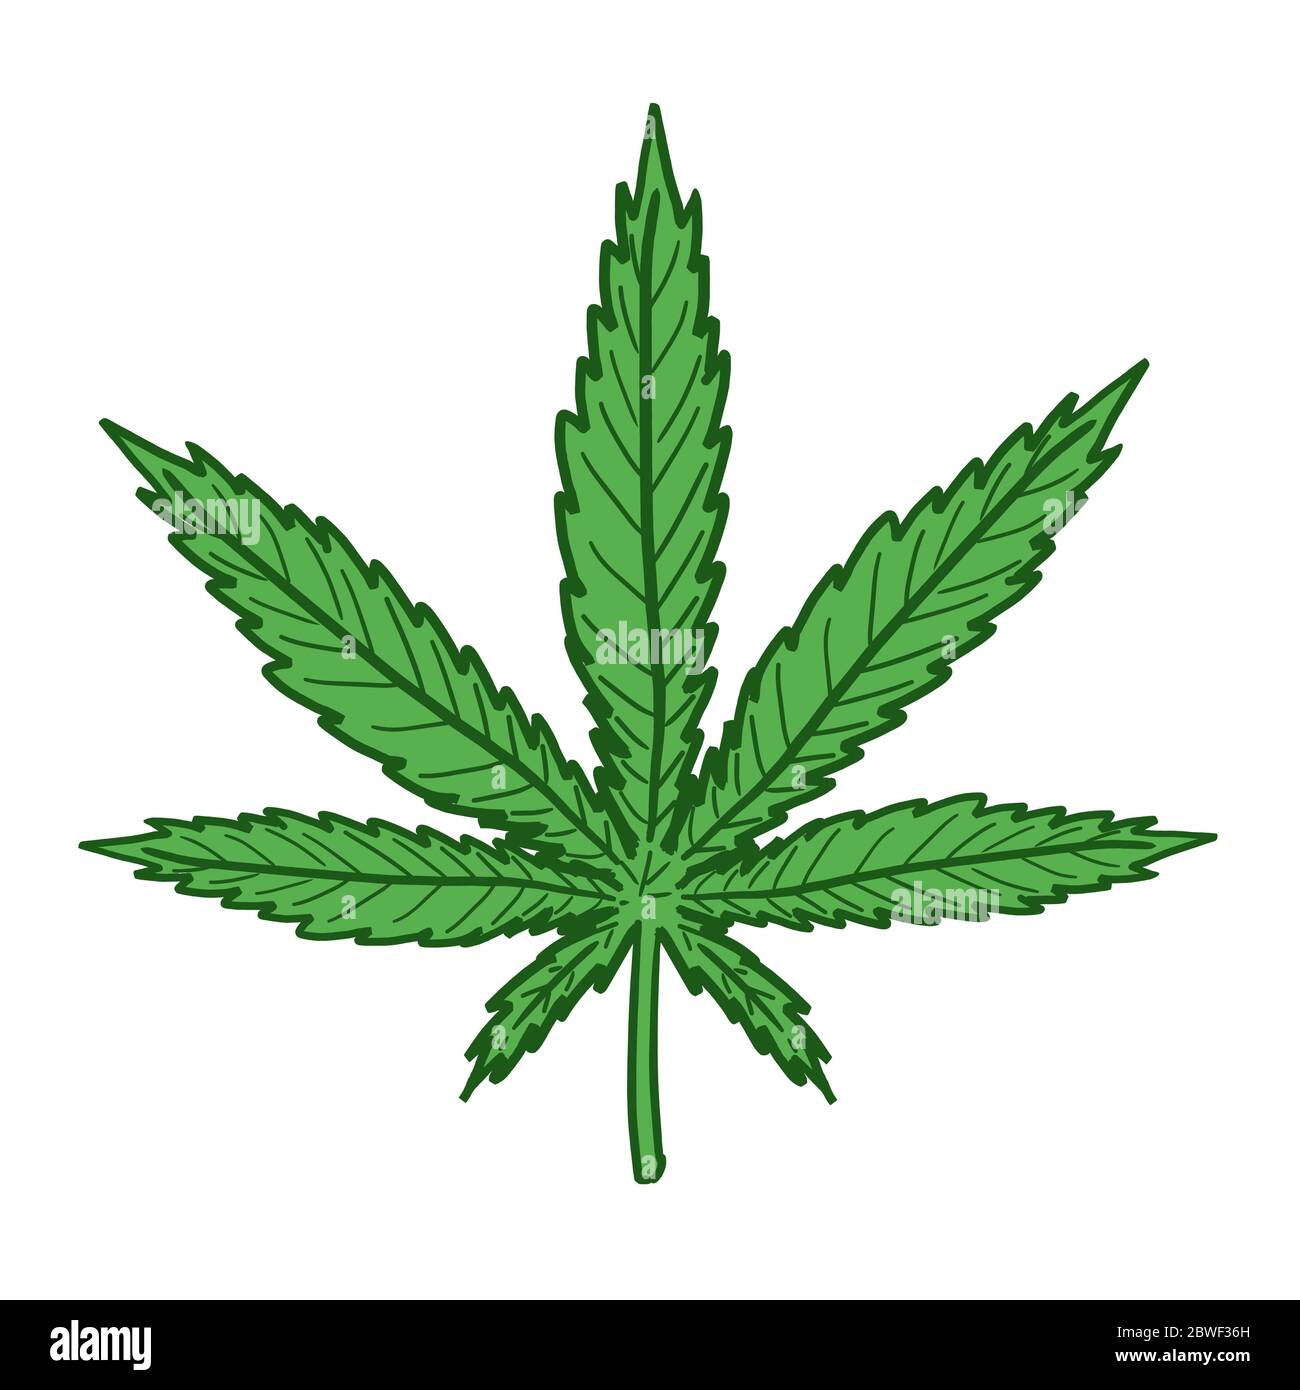 Как рисовать листик марихуаны способ выращивания марихуаны